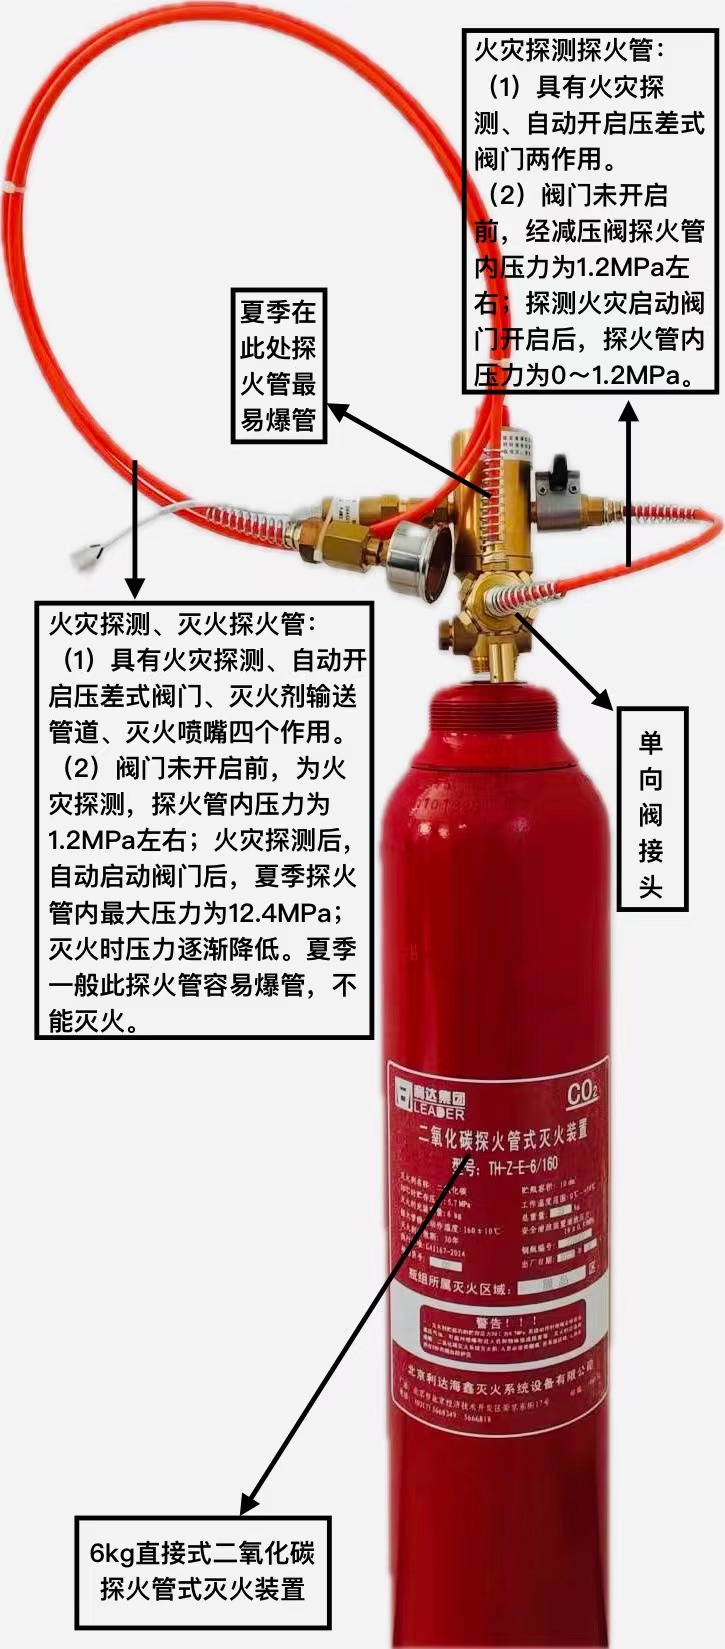 確保氣體滅火系統產品“一帶一路”出口項目的**、密封、滅火性能相關的技術要求與措施探討